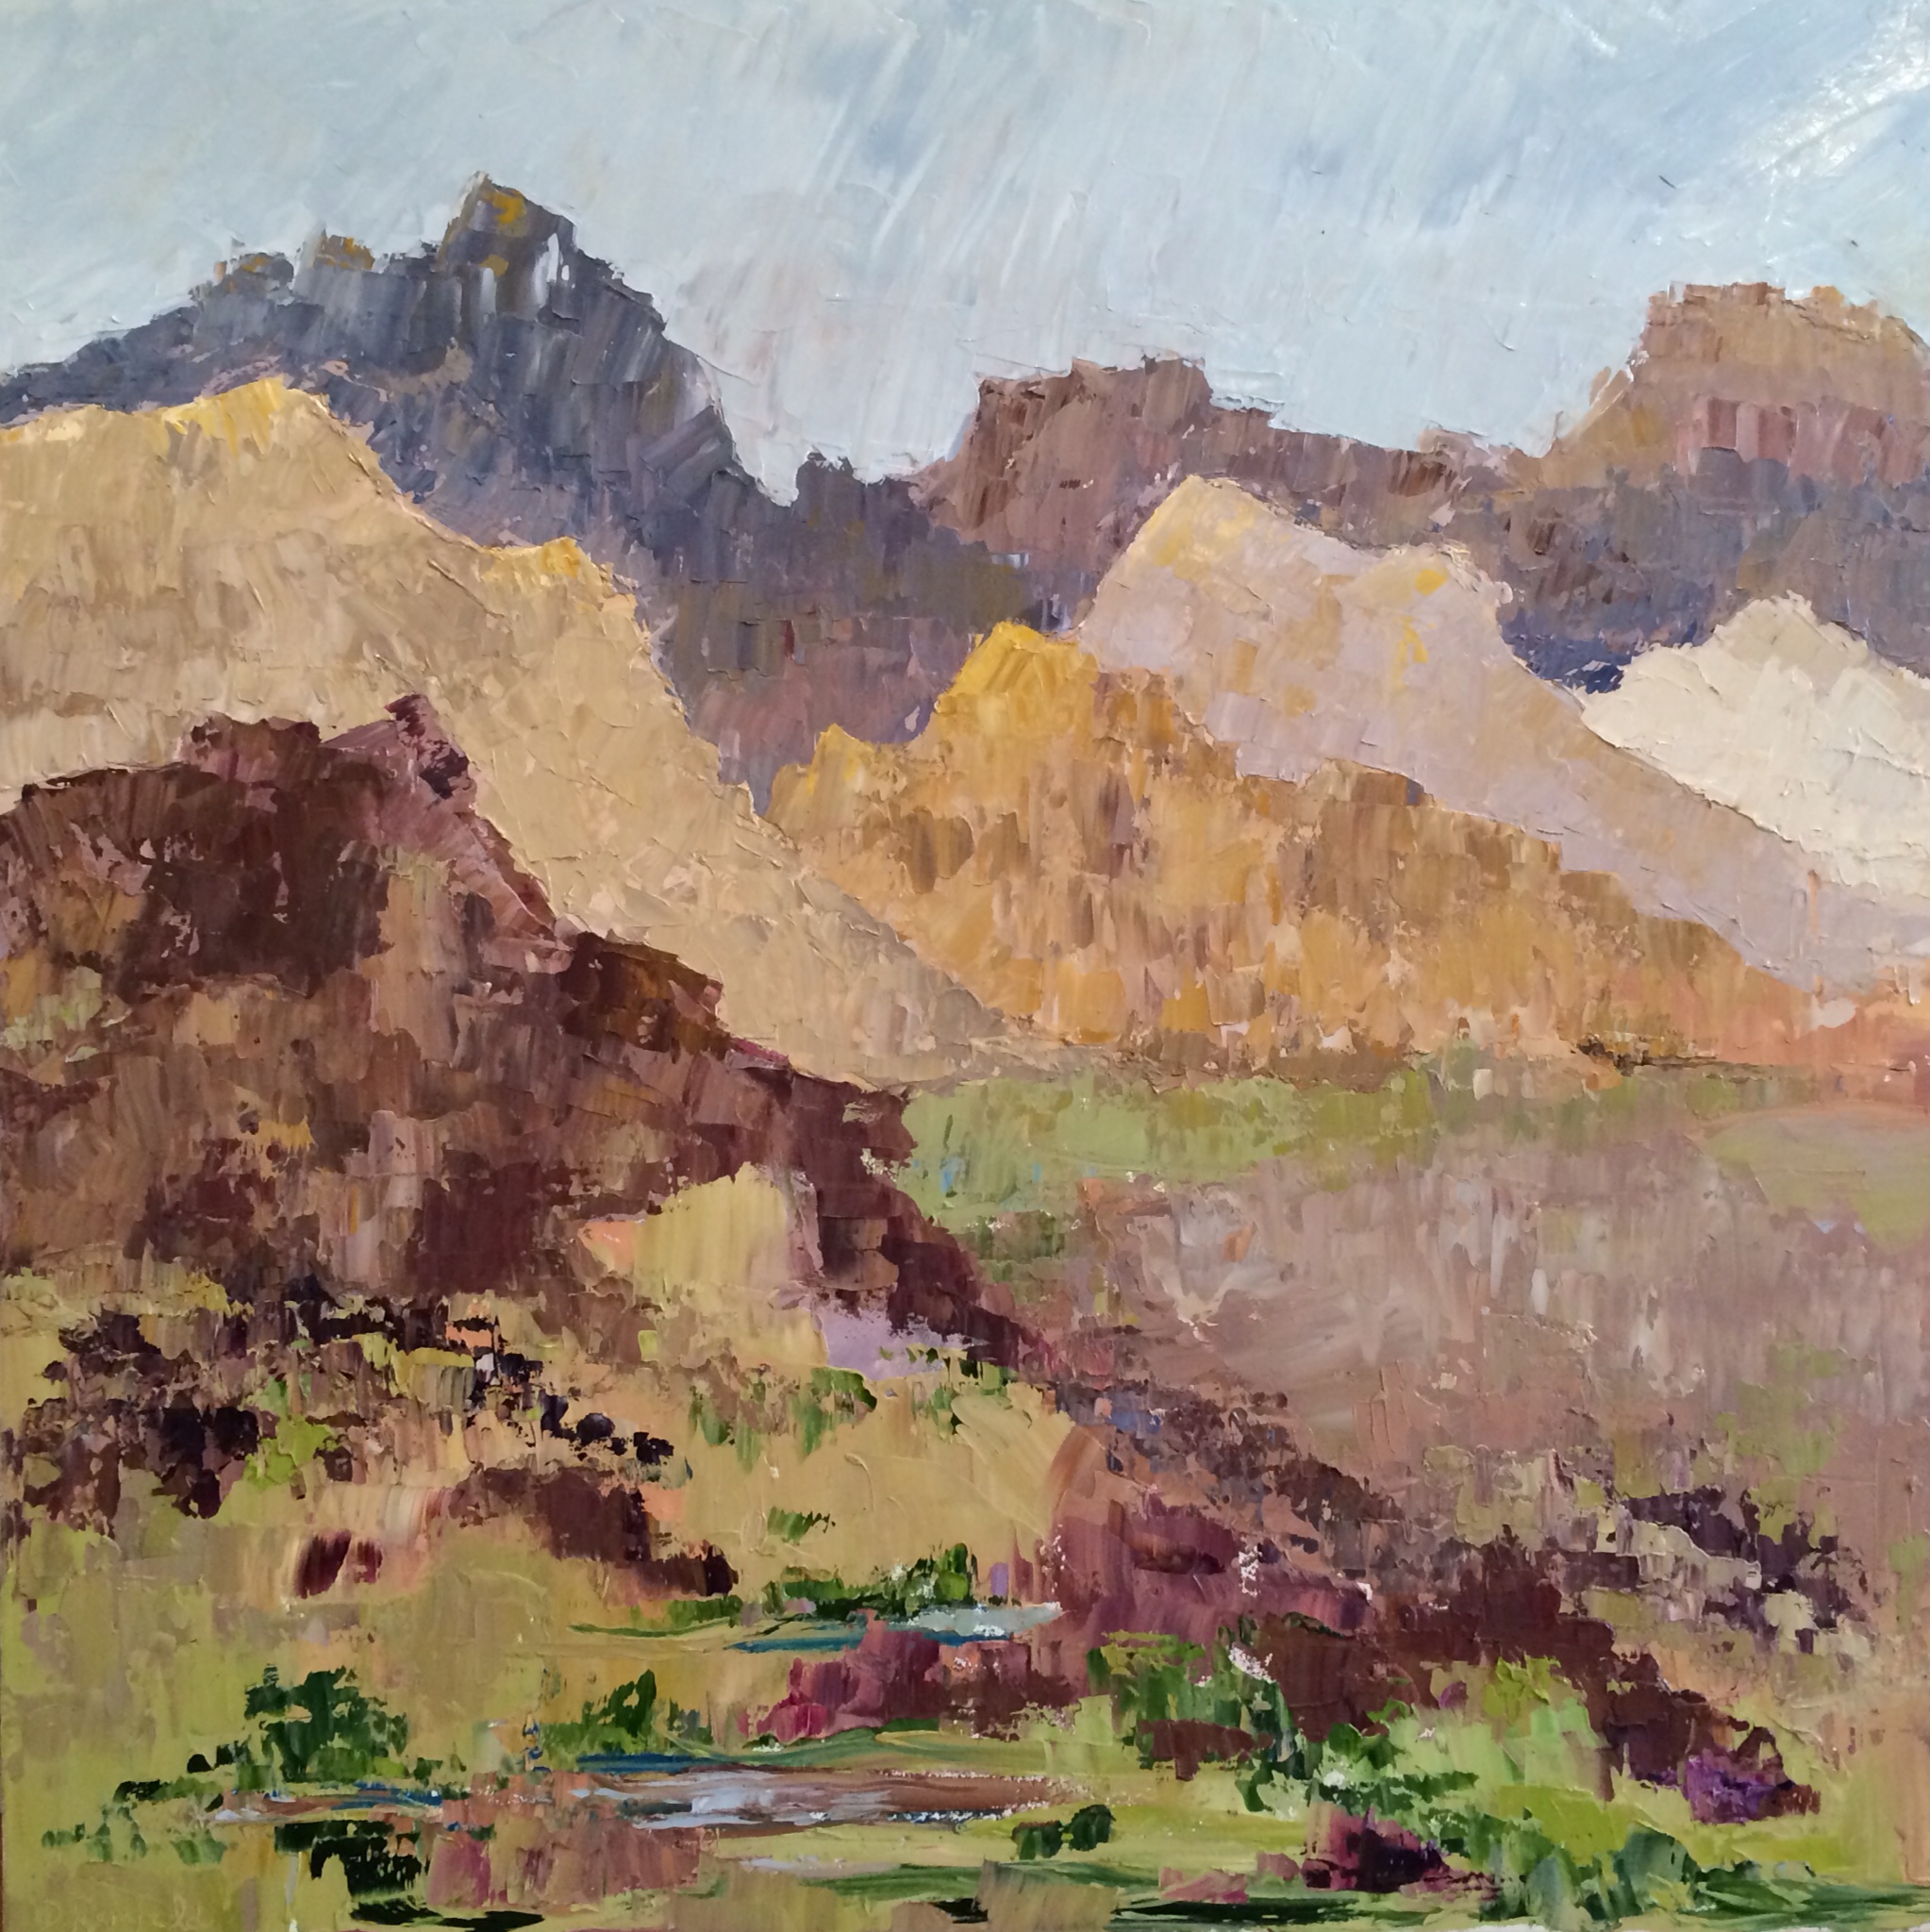 Desert Dream, oil on canvas, 36"x36" SOLD